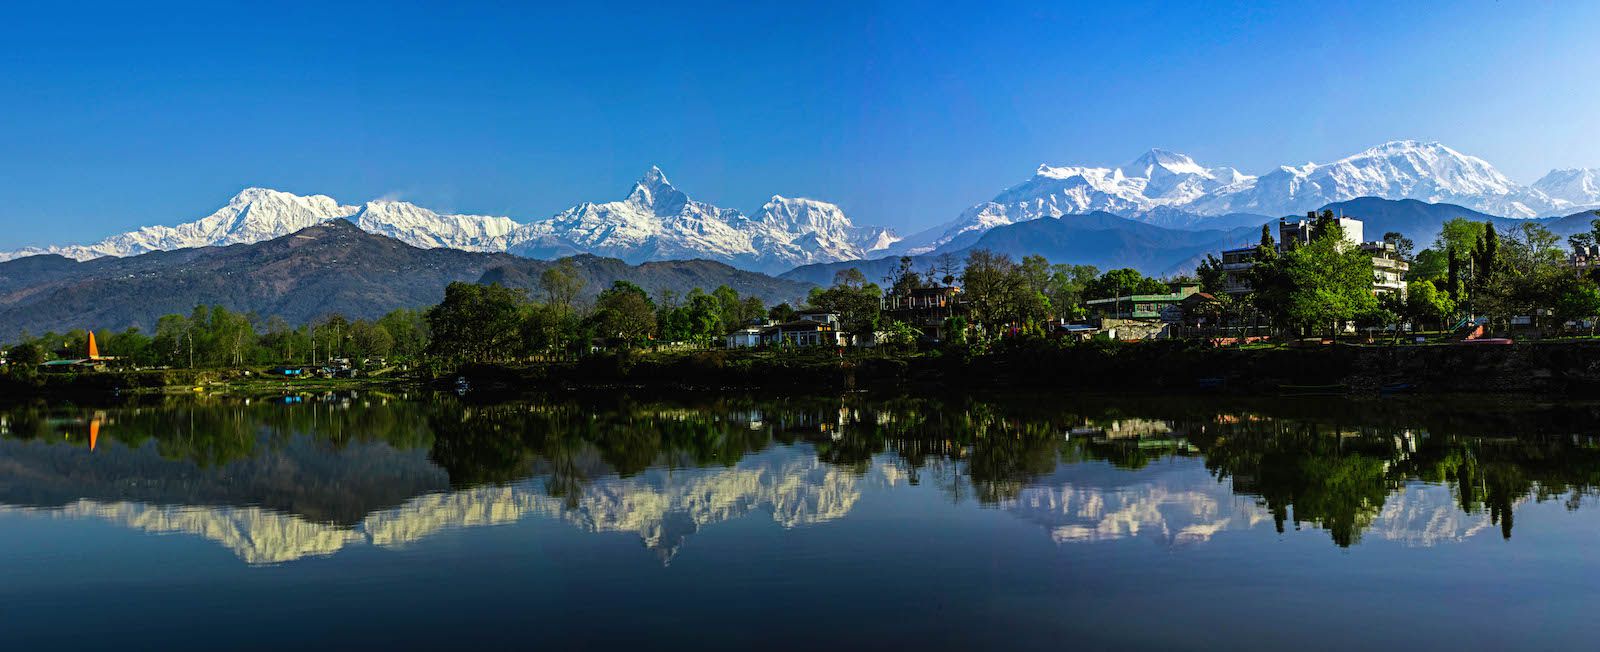 Beautiful view of the Annapurna Himalayan Range, Pokhara, Nepal